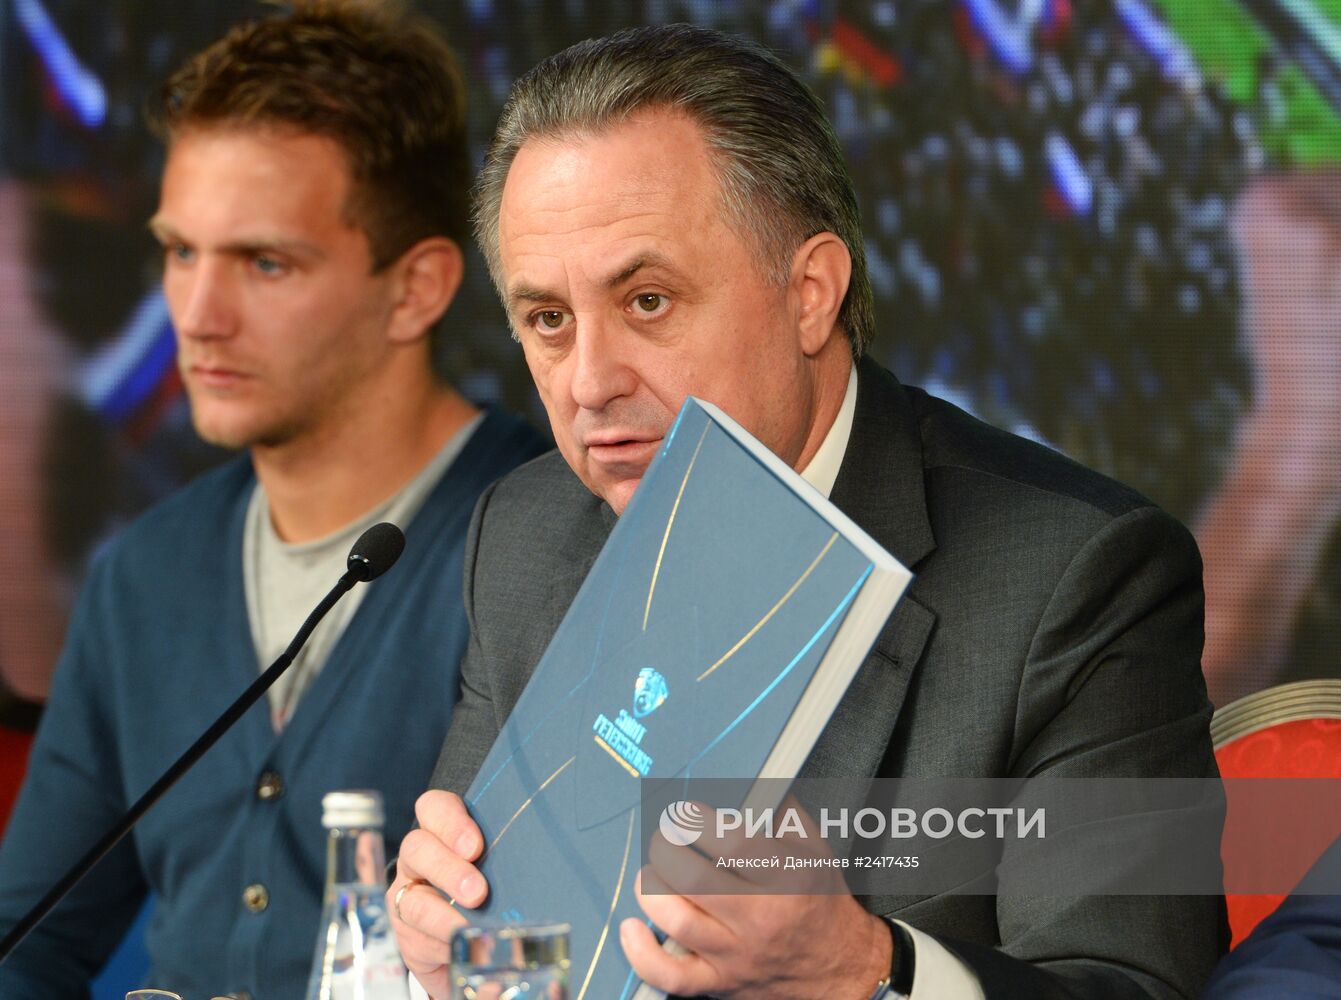 Презентация Заявочной книги Евро-2020 по футболу